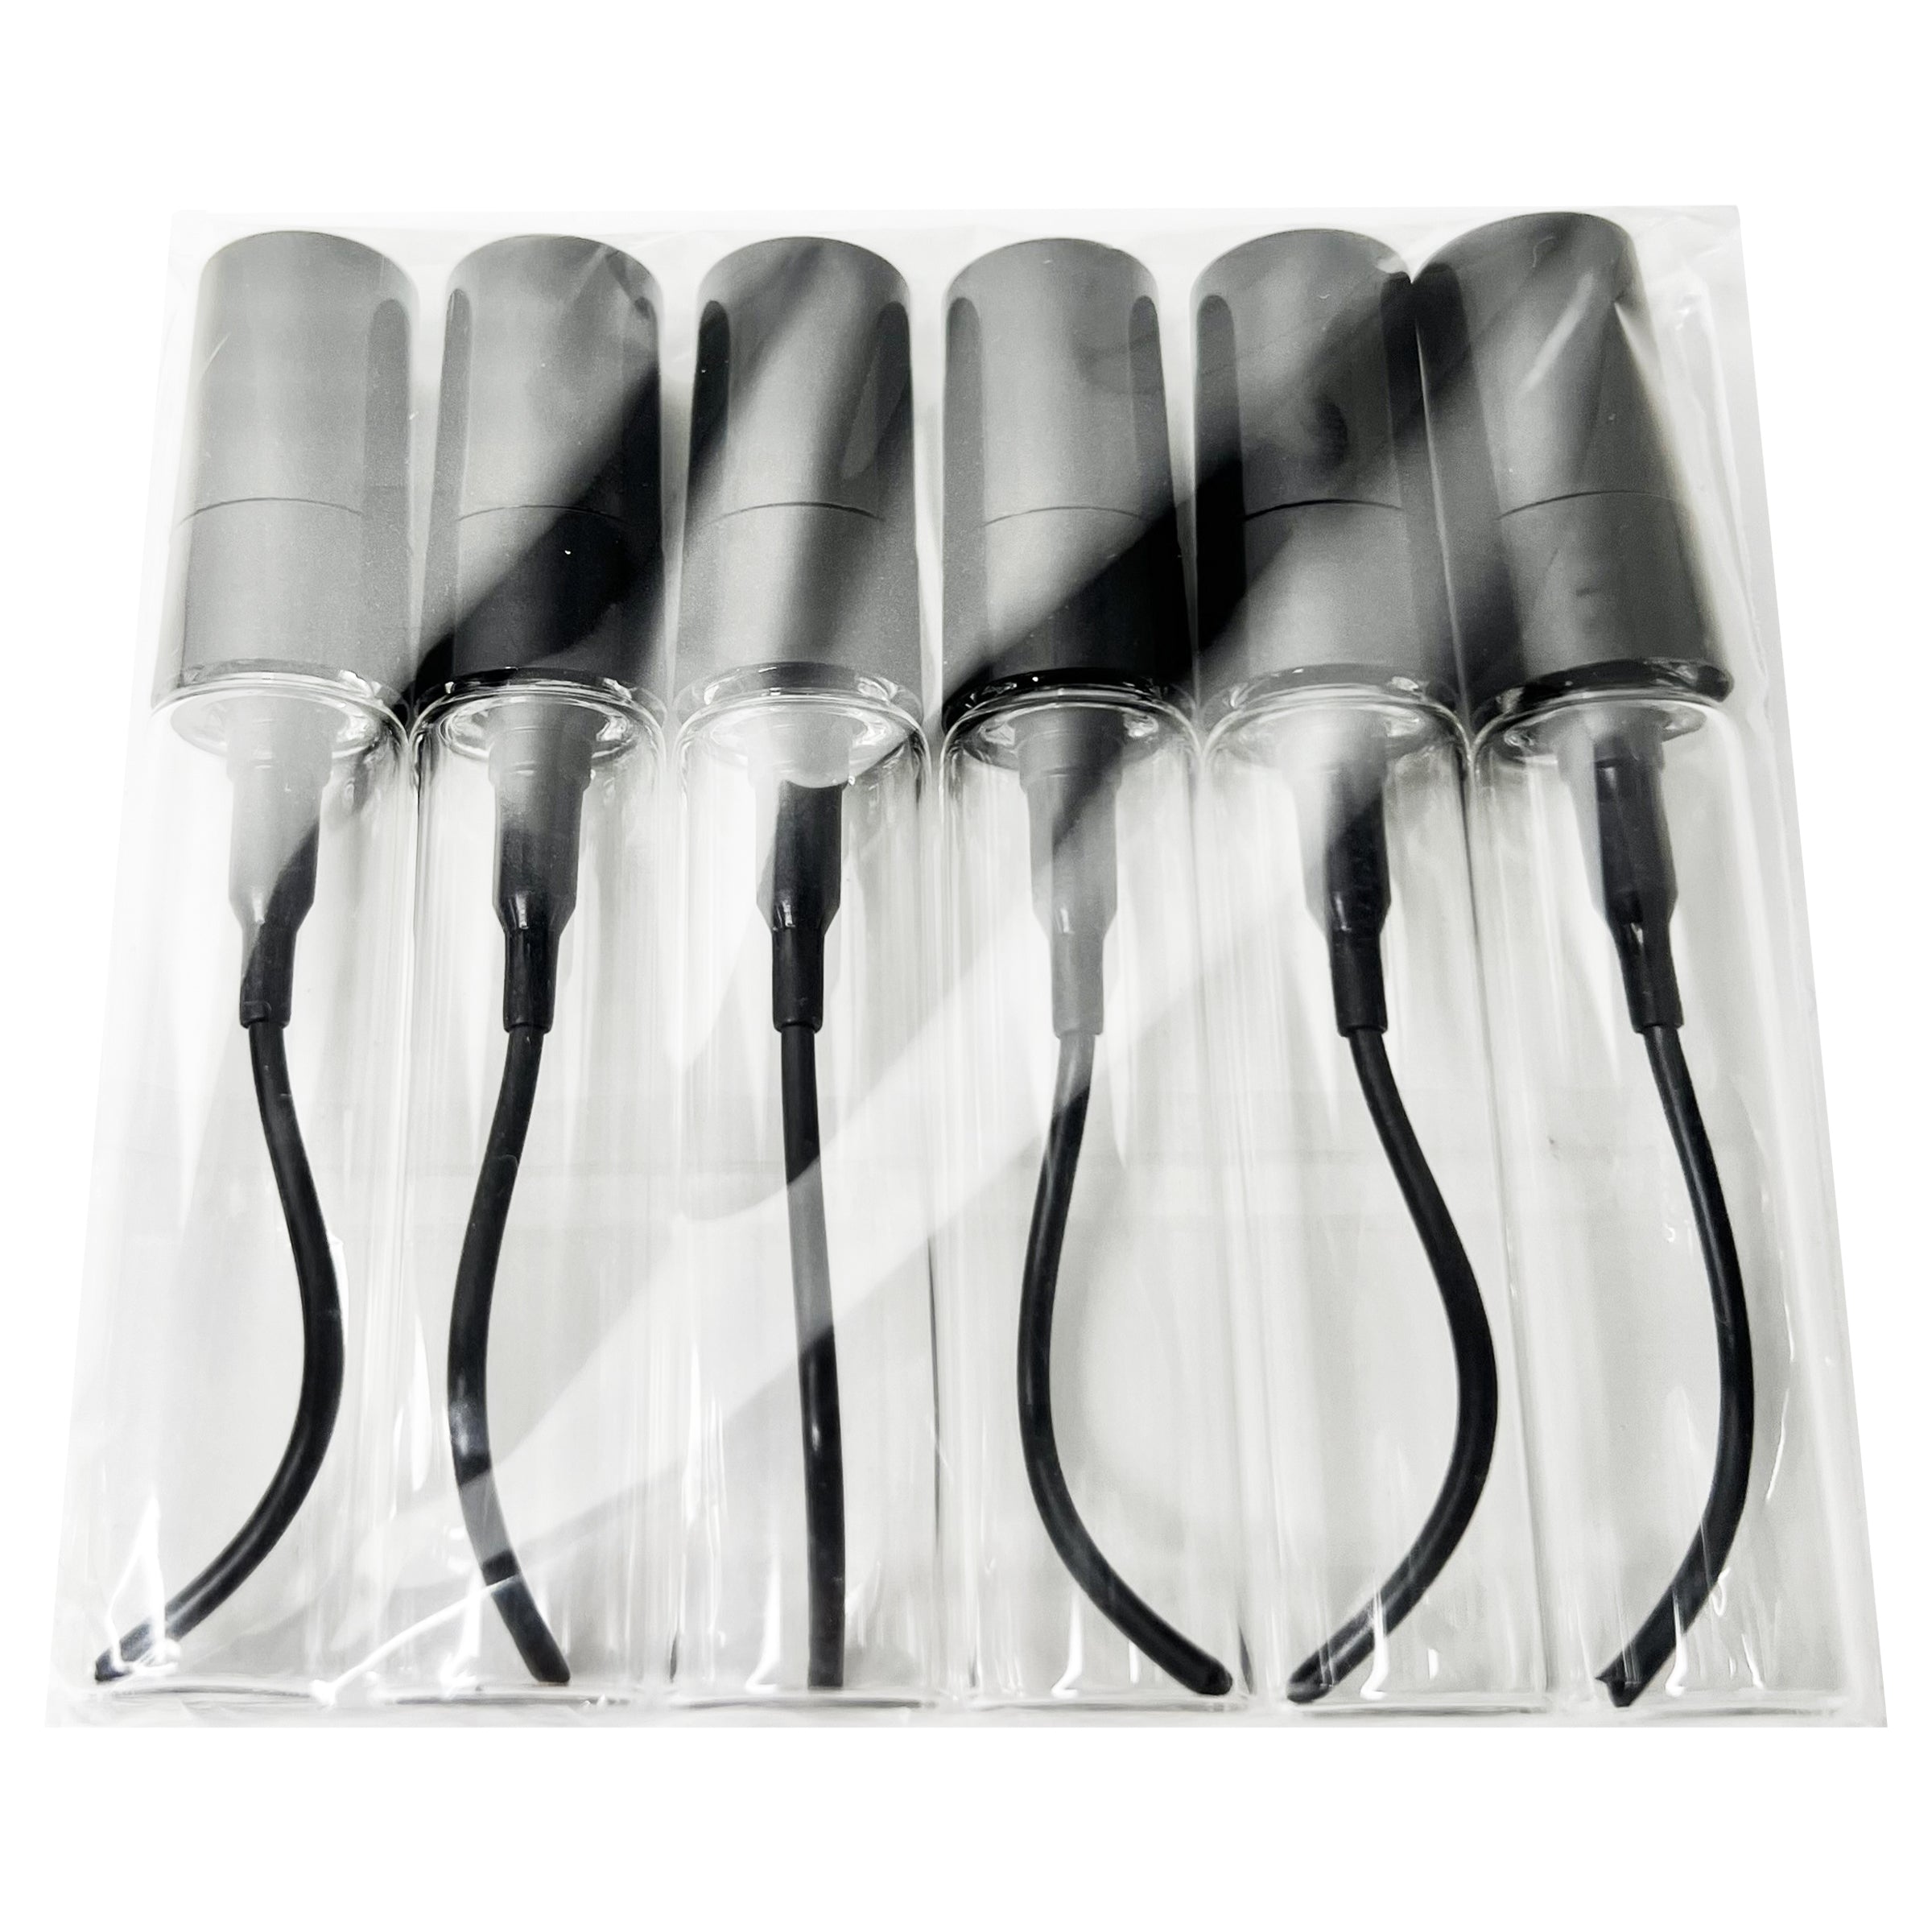 5ml 0.17oz mini glass bottles black tube sprayers for perfume oils